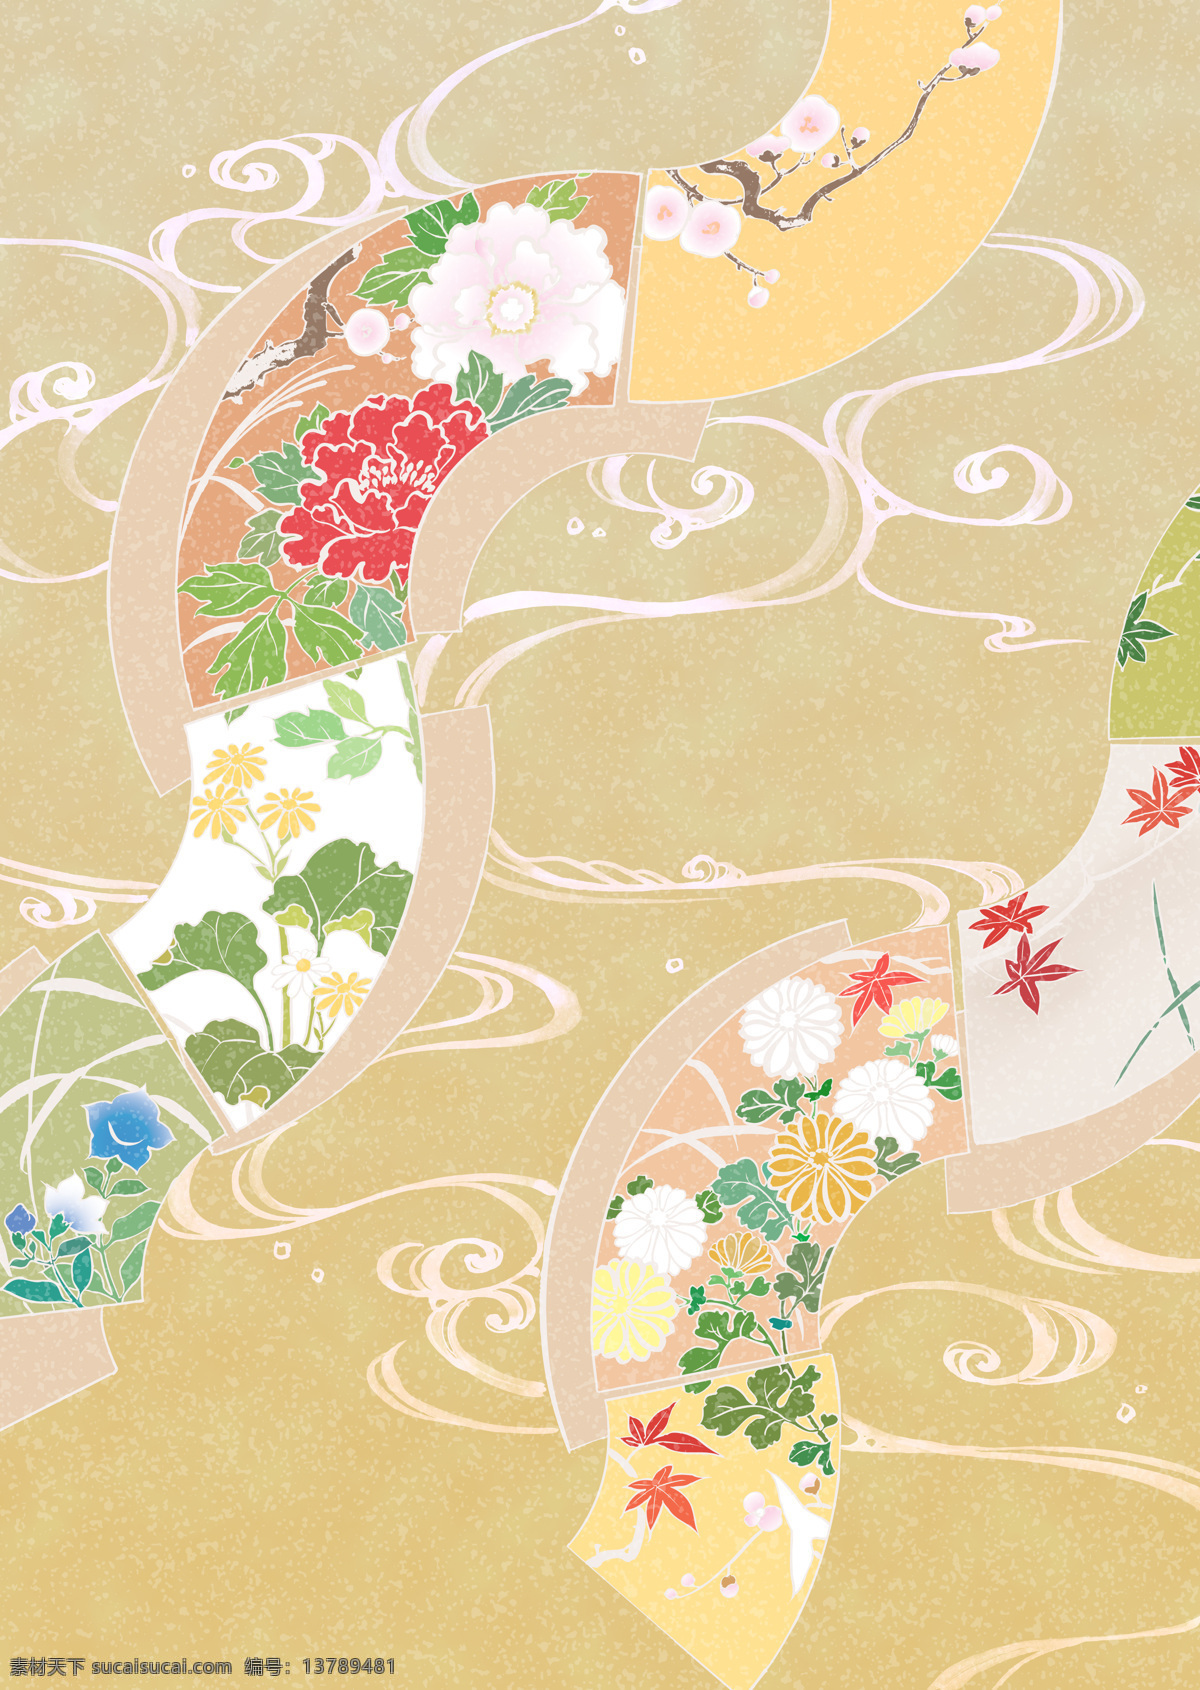 和服扇子 和服 日本 扇子 流云 花卉 移门 移门图案 底纹边框